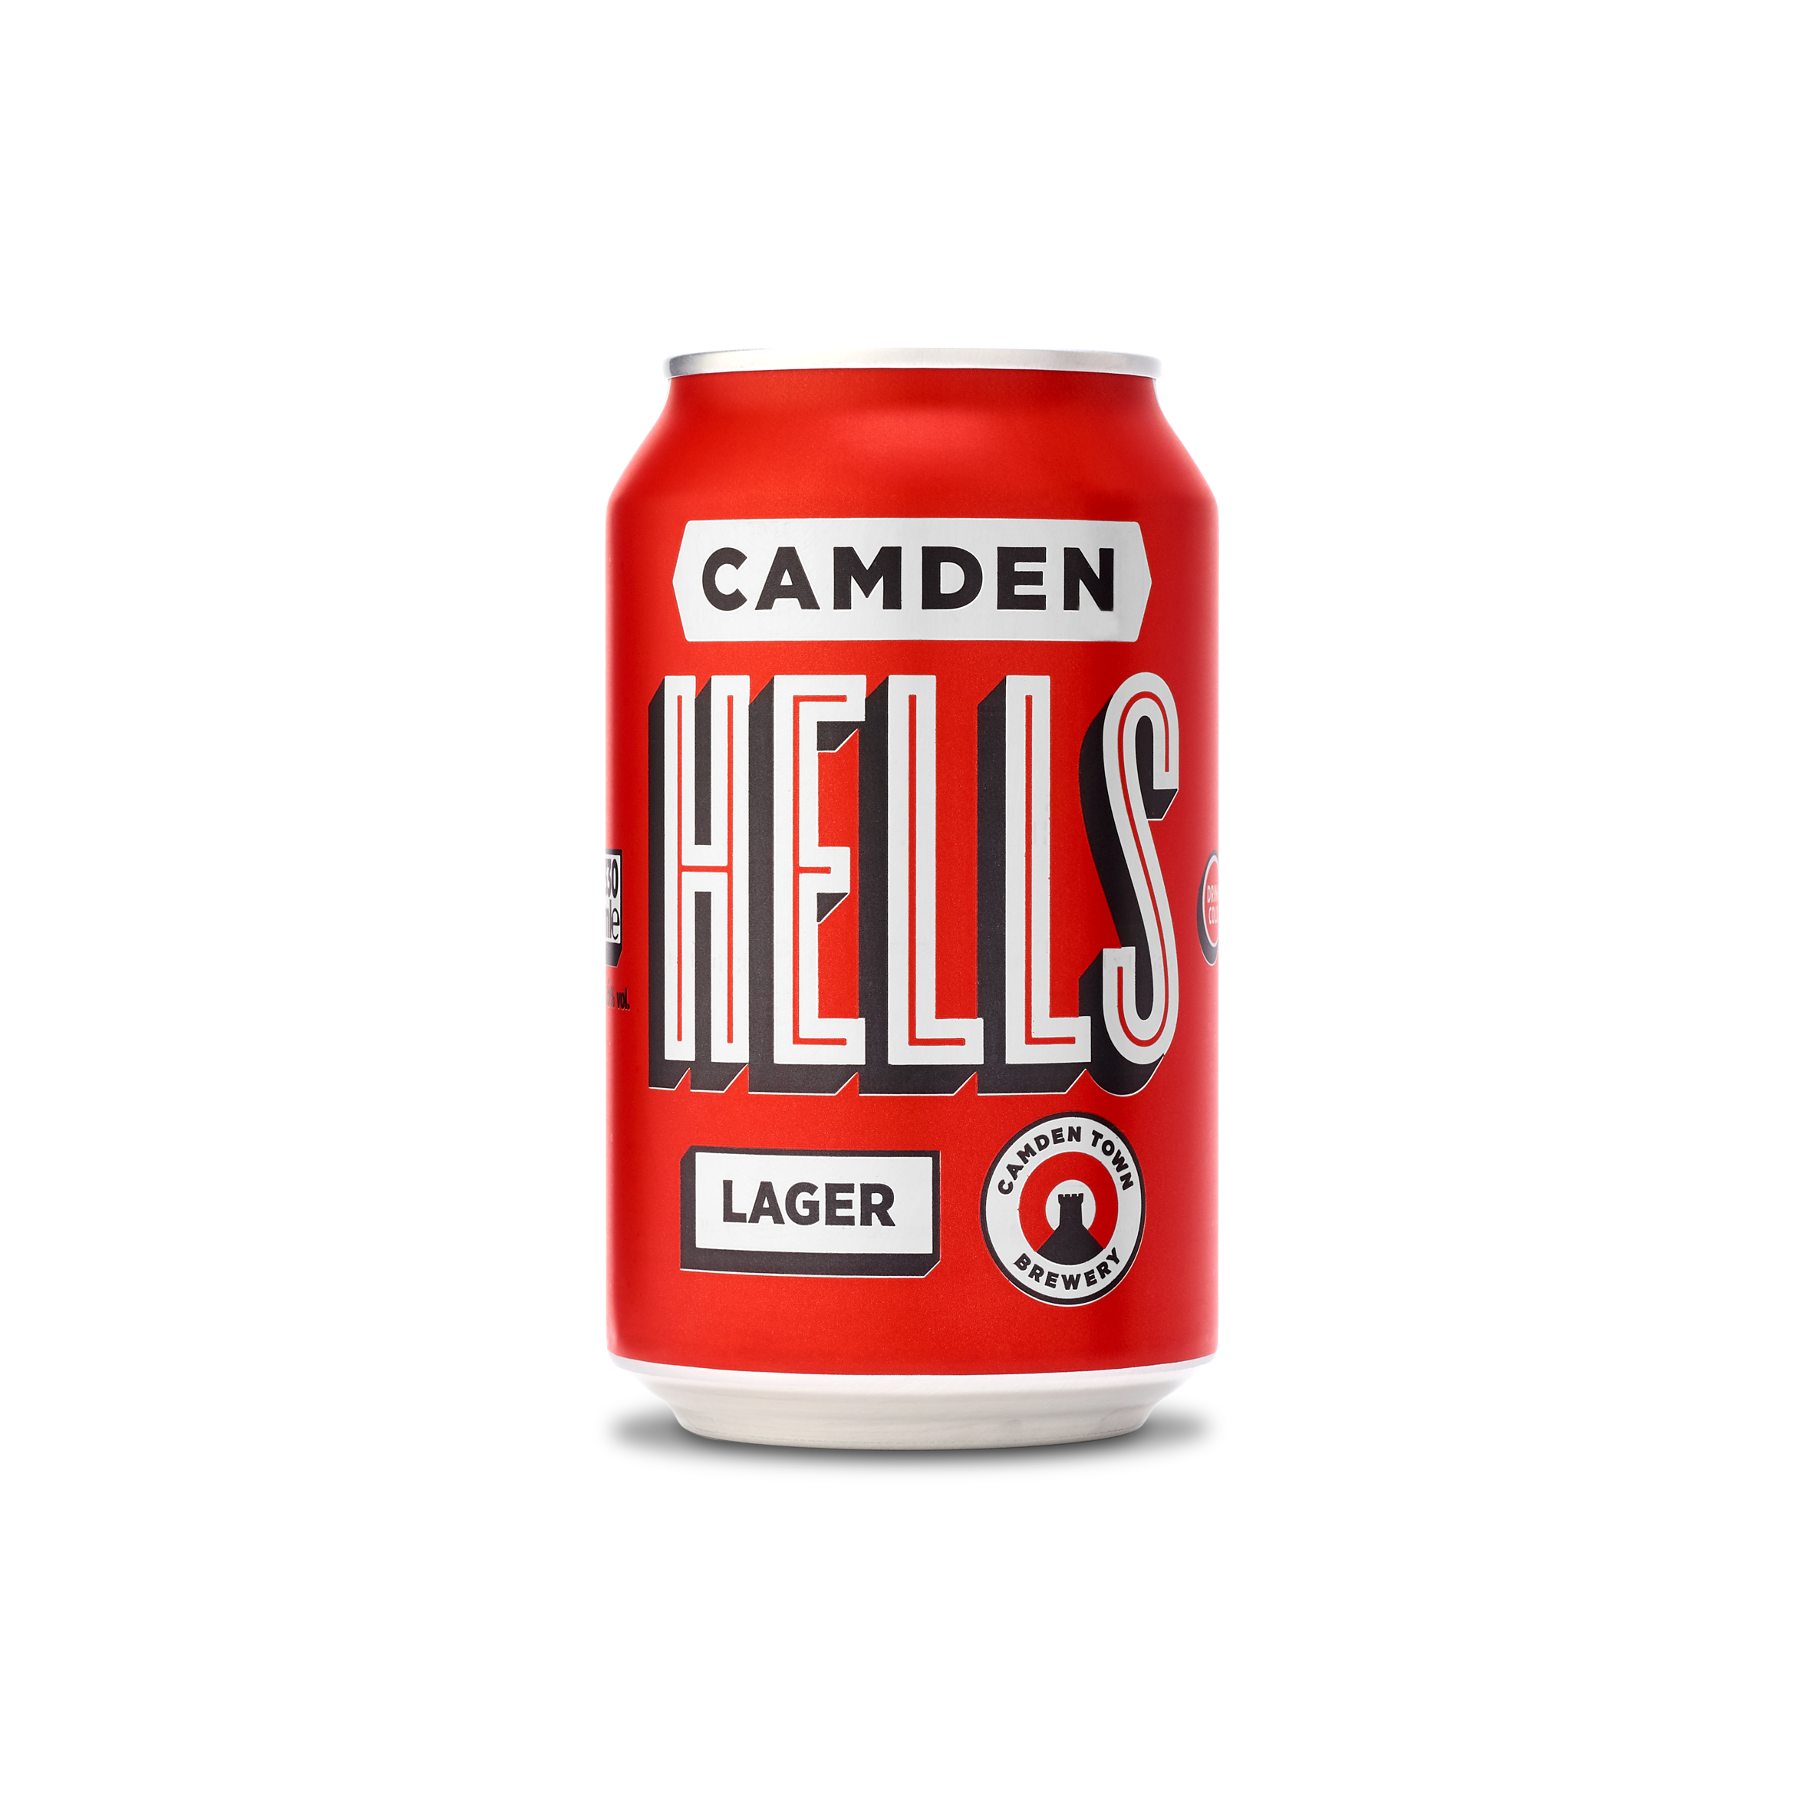 Camden Hells can